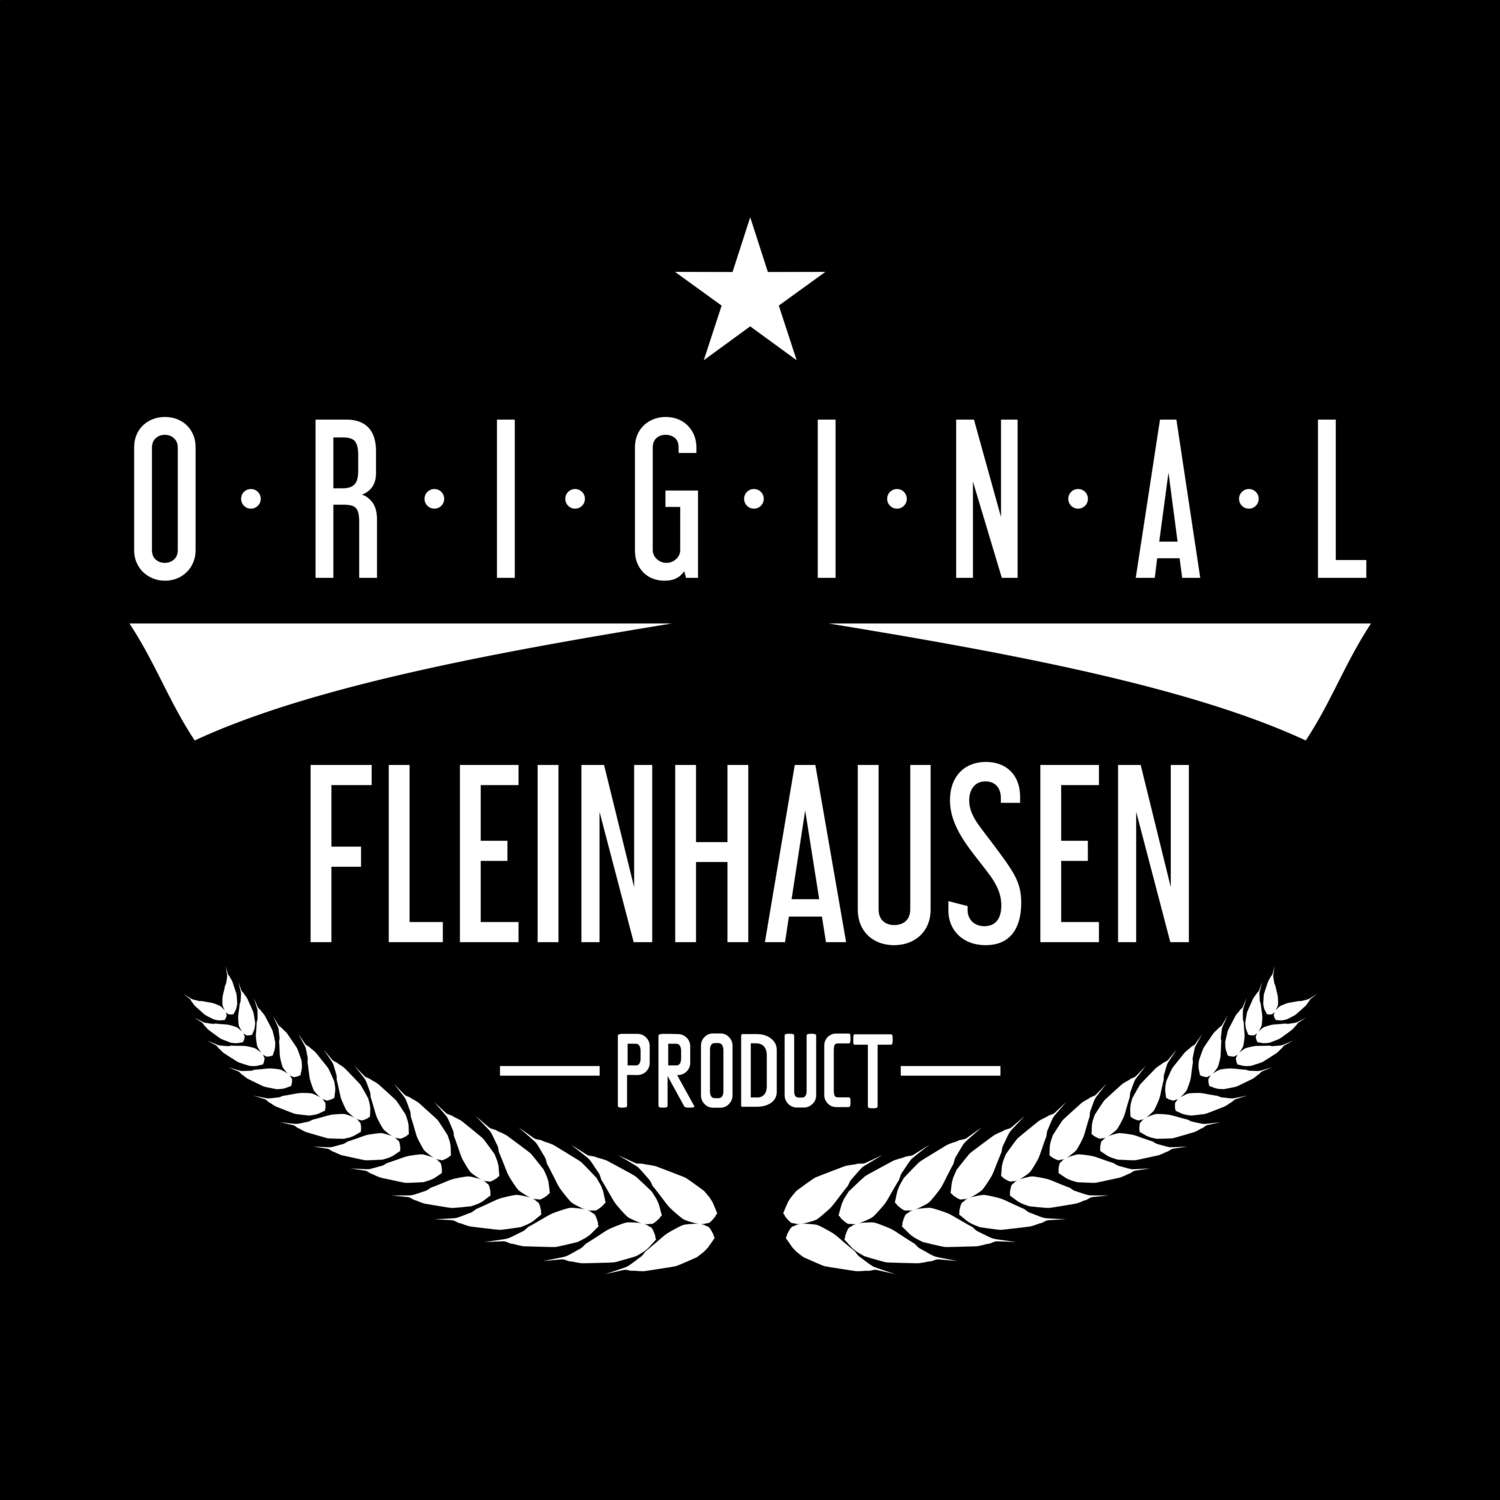 Fleinhausen T-Shirt »Original Product«